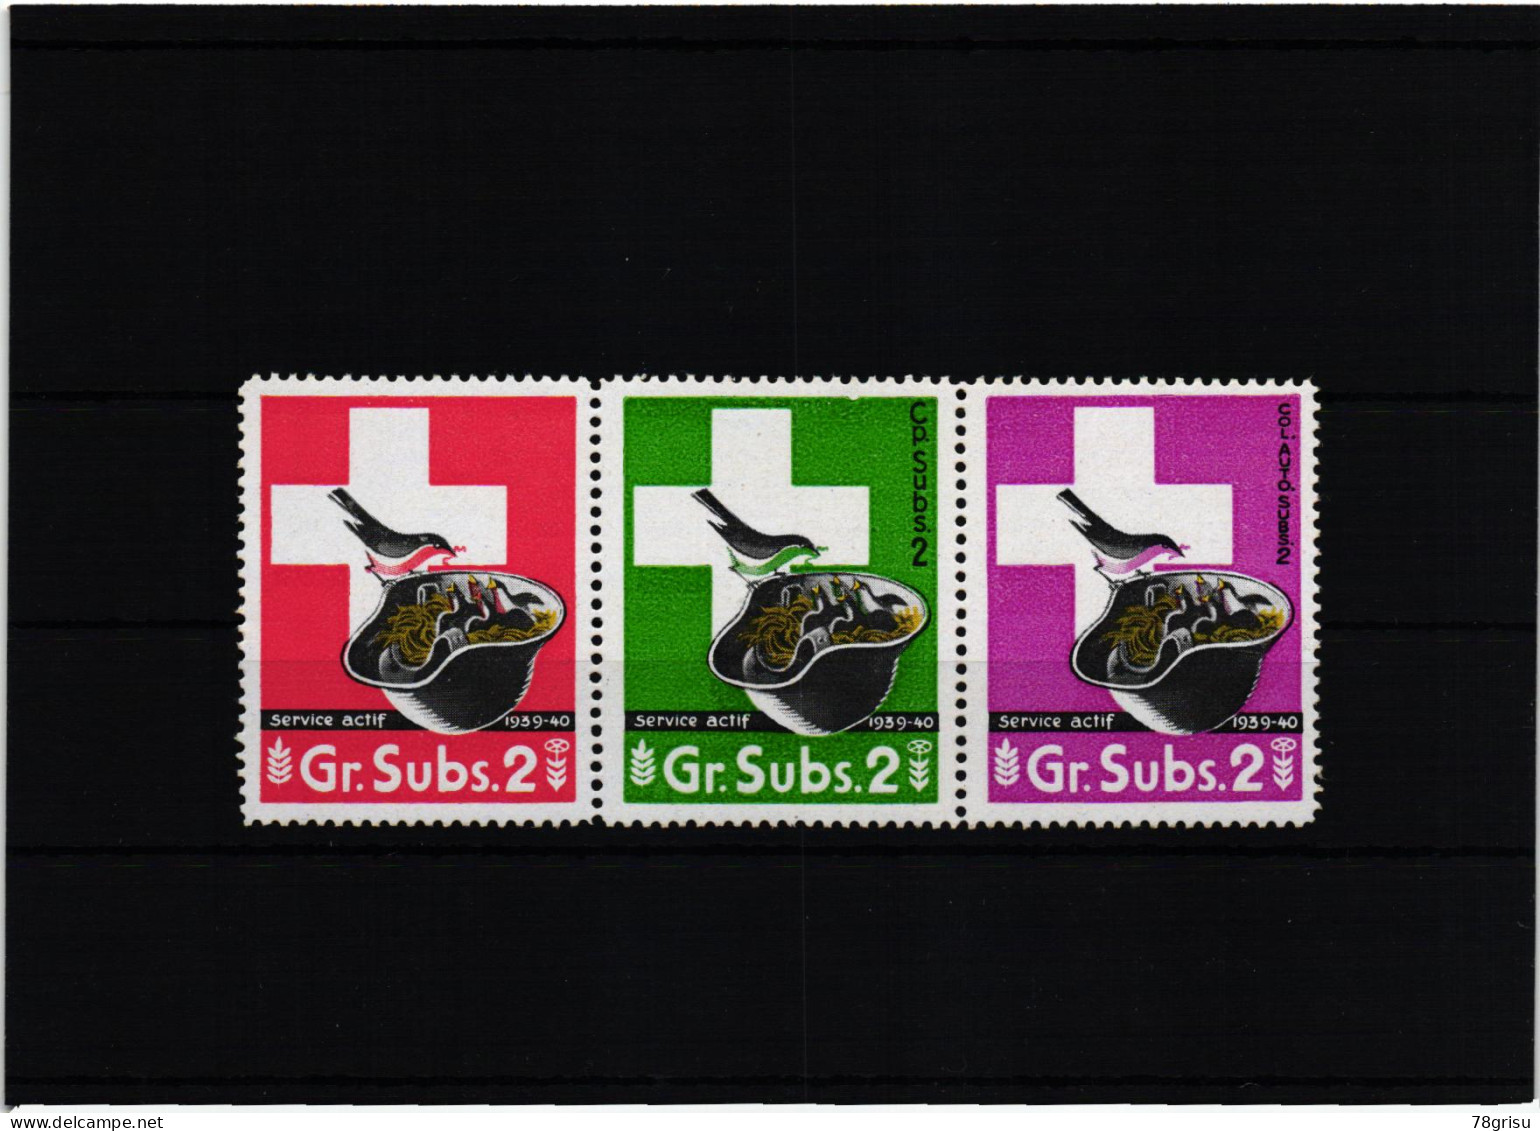 Schweiz Soldatenmarken, GR.Subs. Cp.Subs. Col.Auto.Subs. 1939-40 - Vignettes